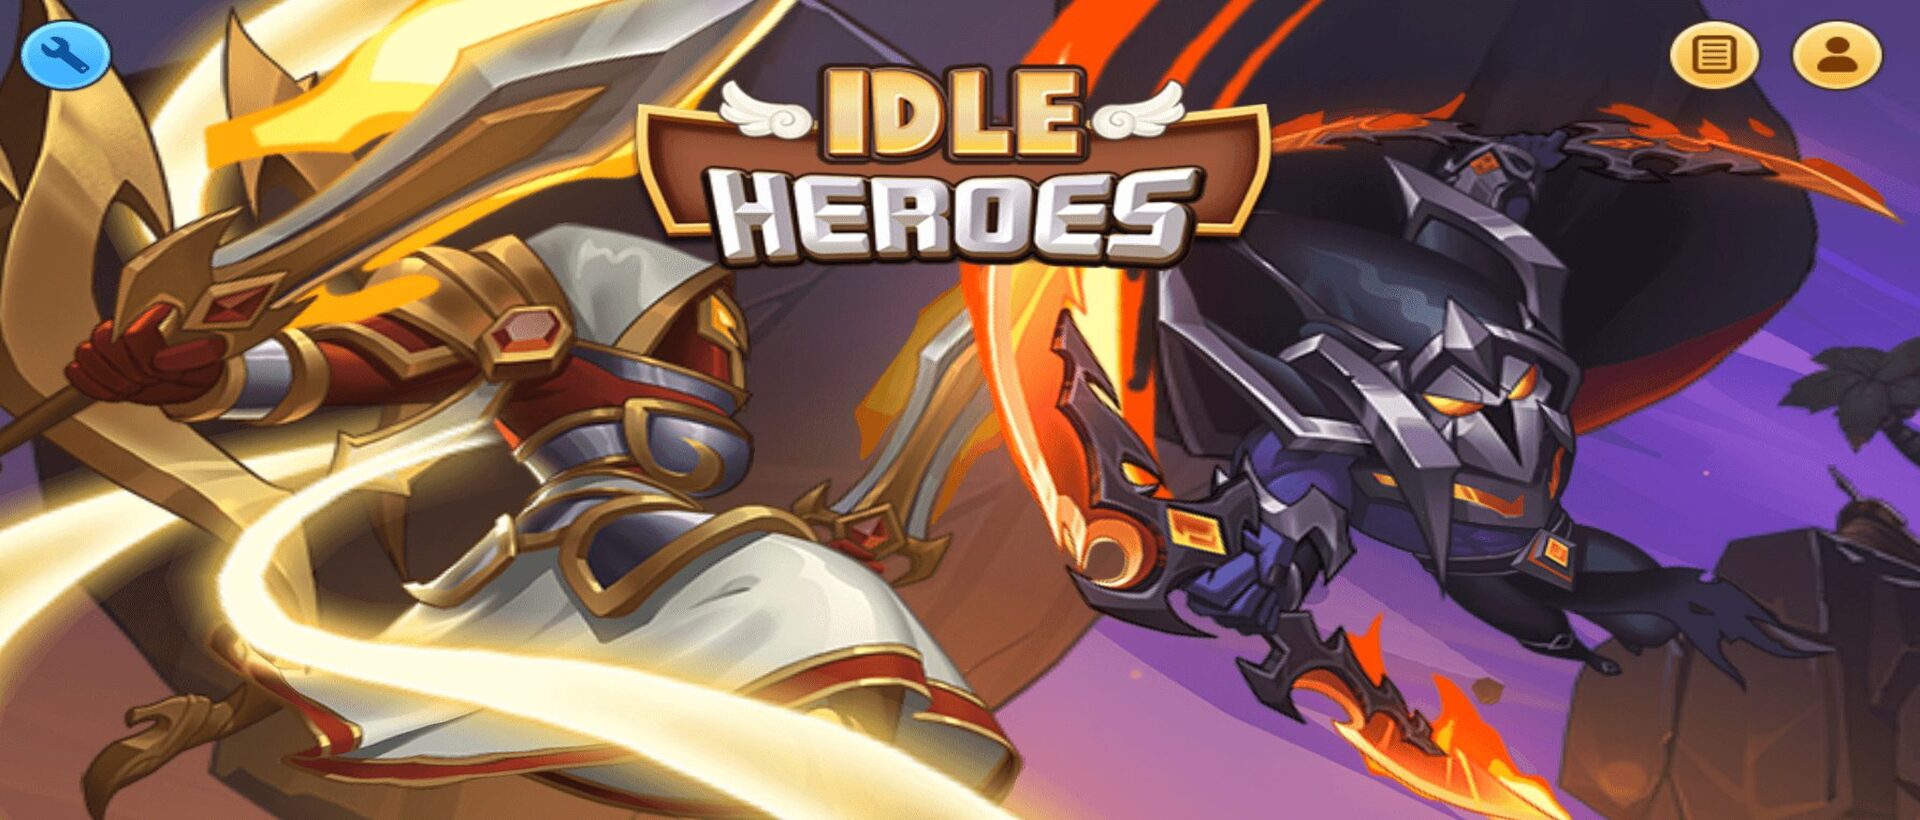 Idle Heroes - Anh Hùng Ánh Sáng